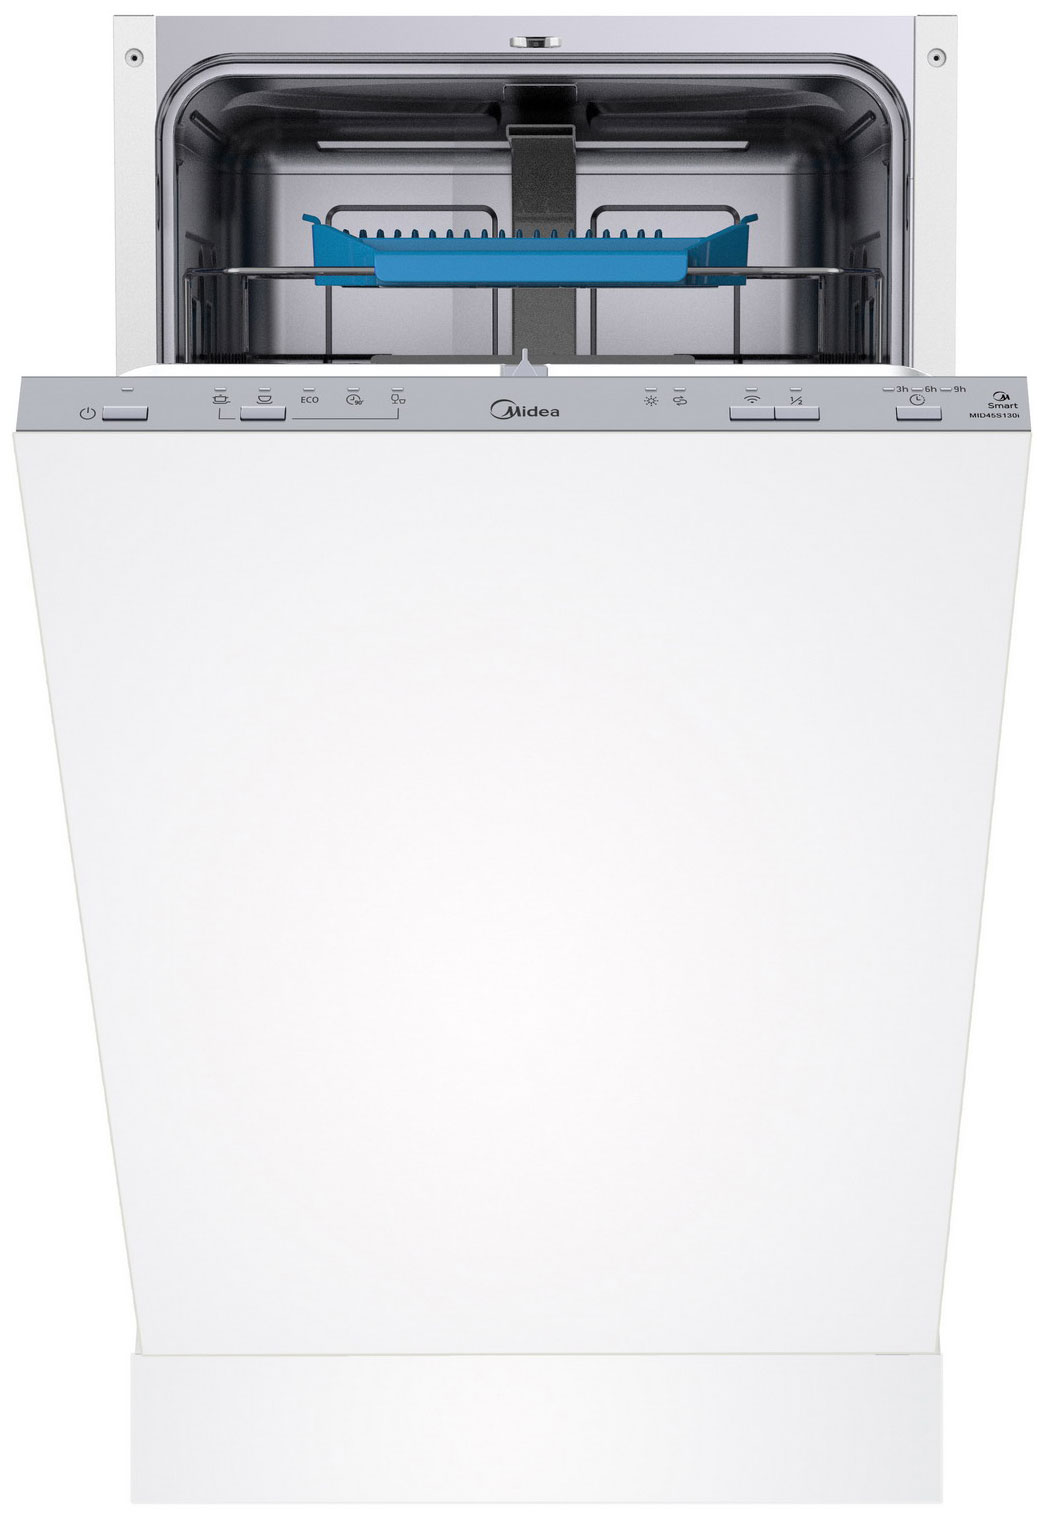 Встраиваемая посудомоечная машина Midea MID45S130i встраиваемая посудомоечная машина midea mid60s430i